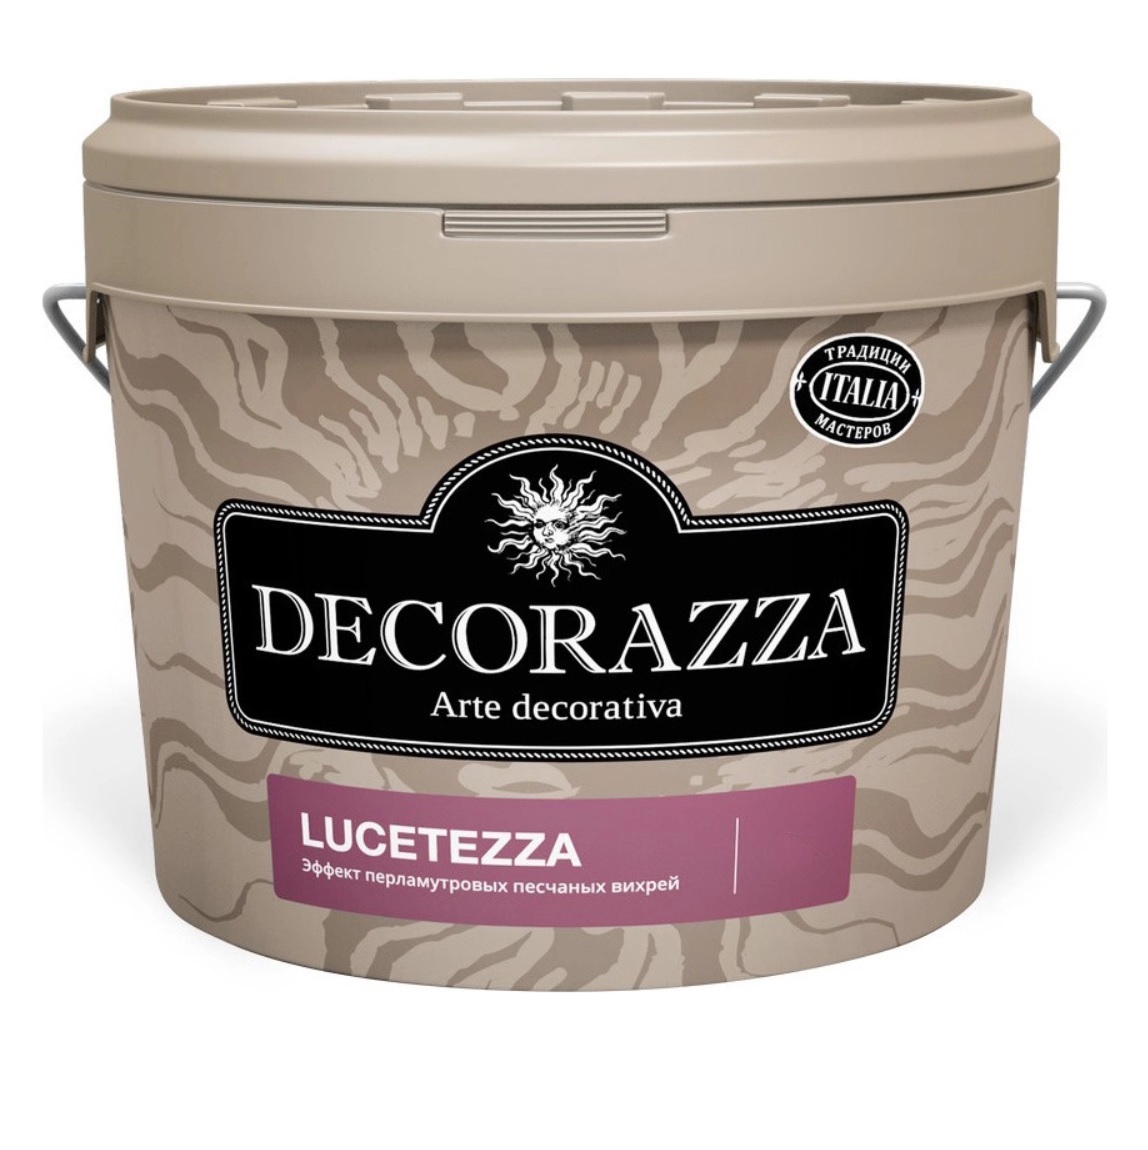 Где купить Декоративная краска Decorazza lucetezza база aluminium 5.0кг Decorazza 